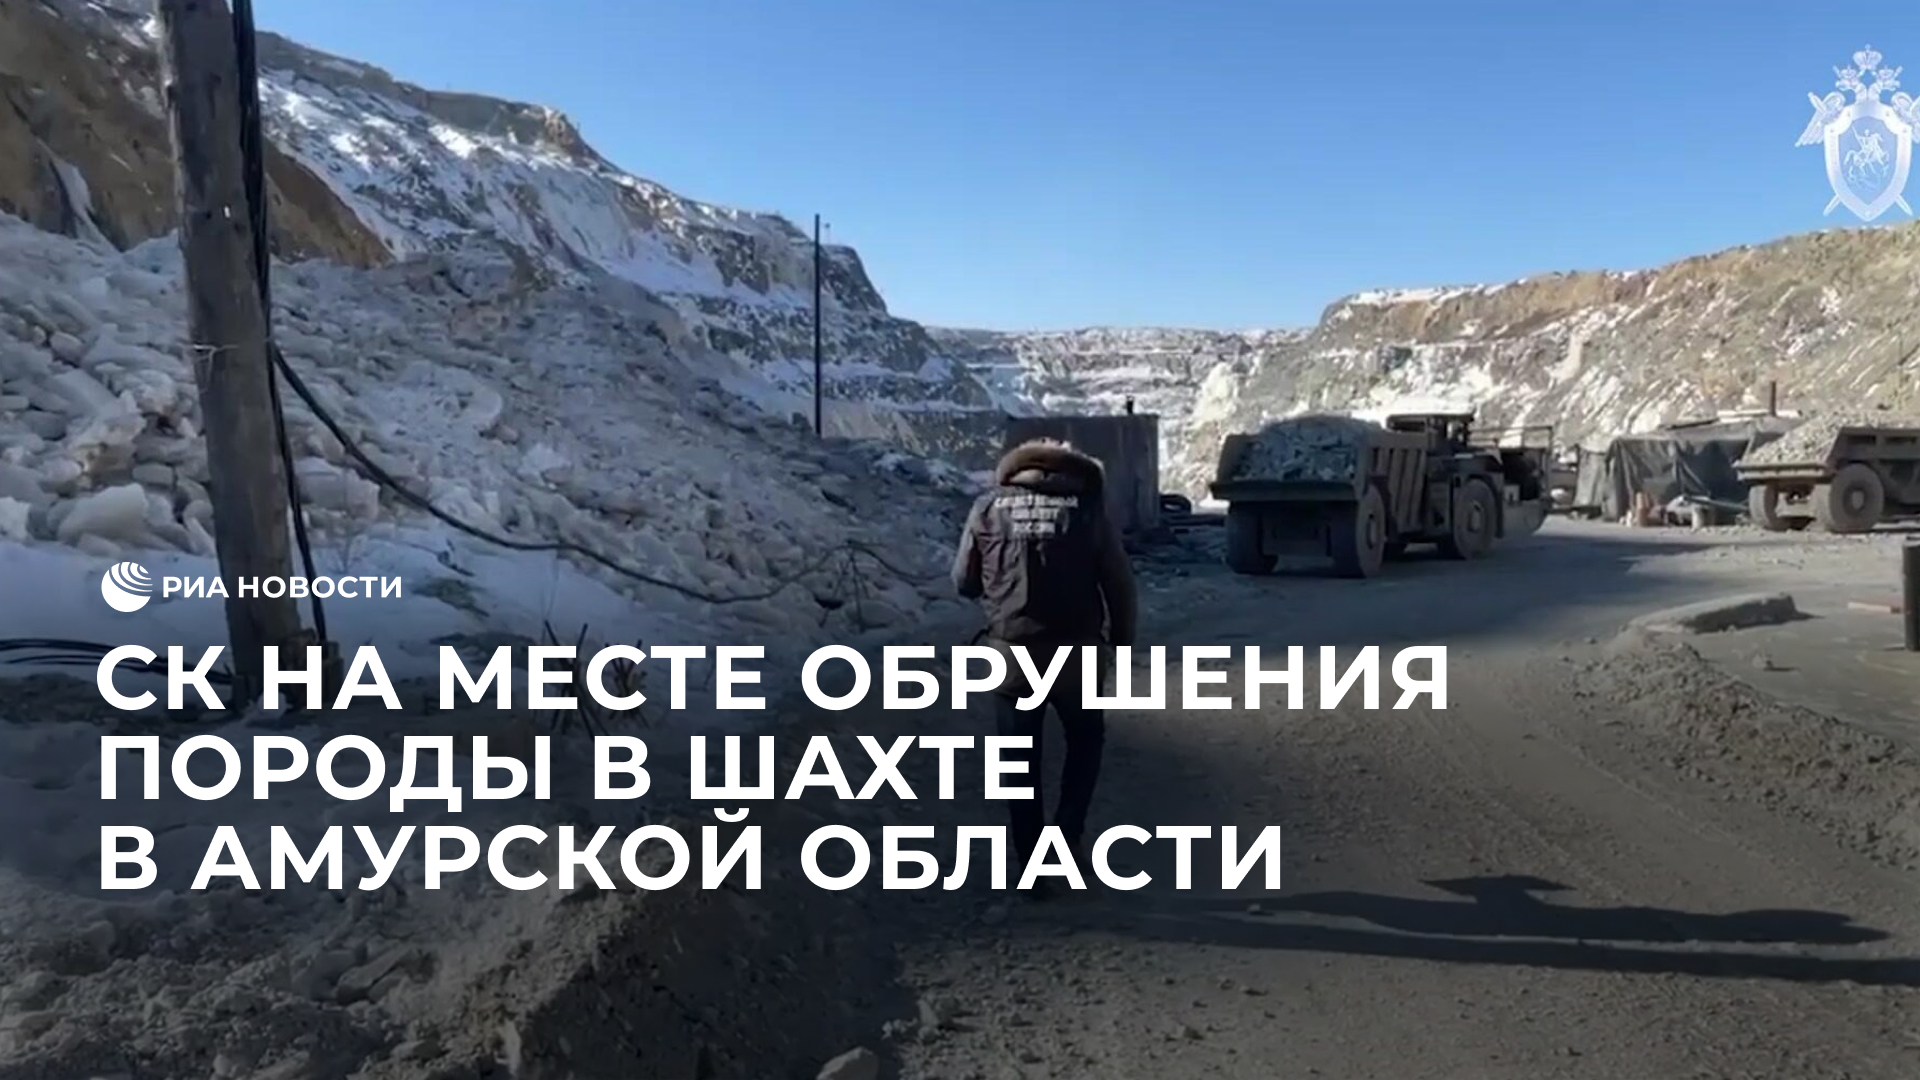 СК на месте обрушения породы в шахте в Амурской области